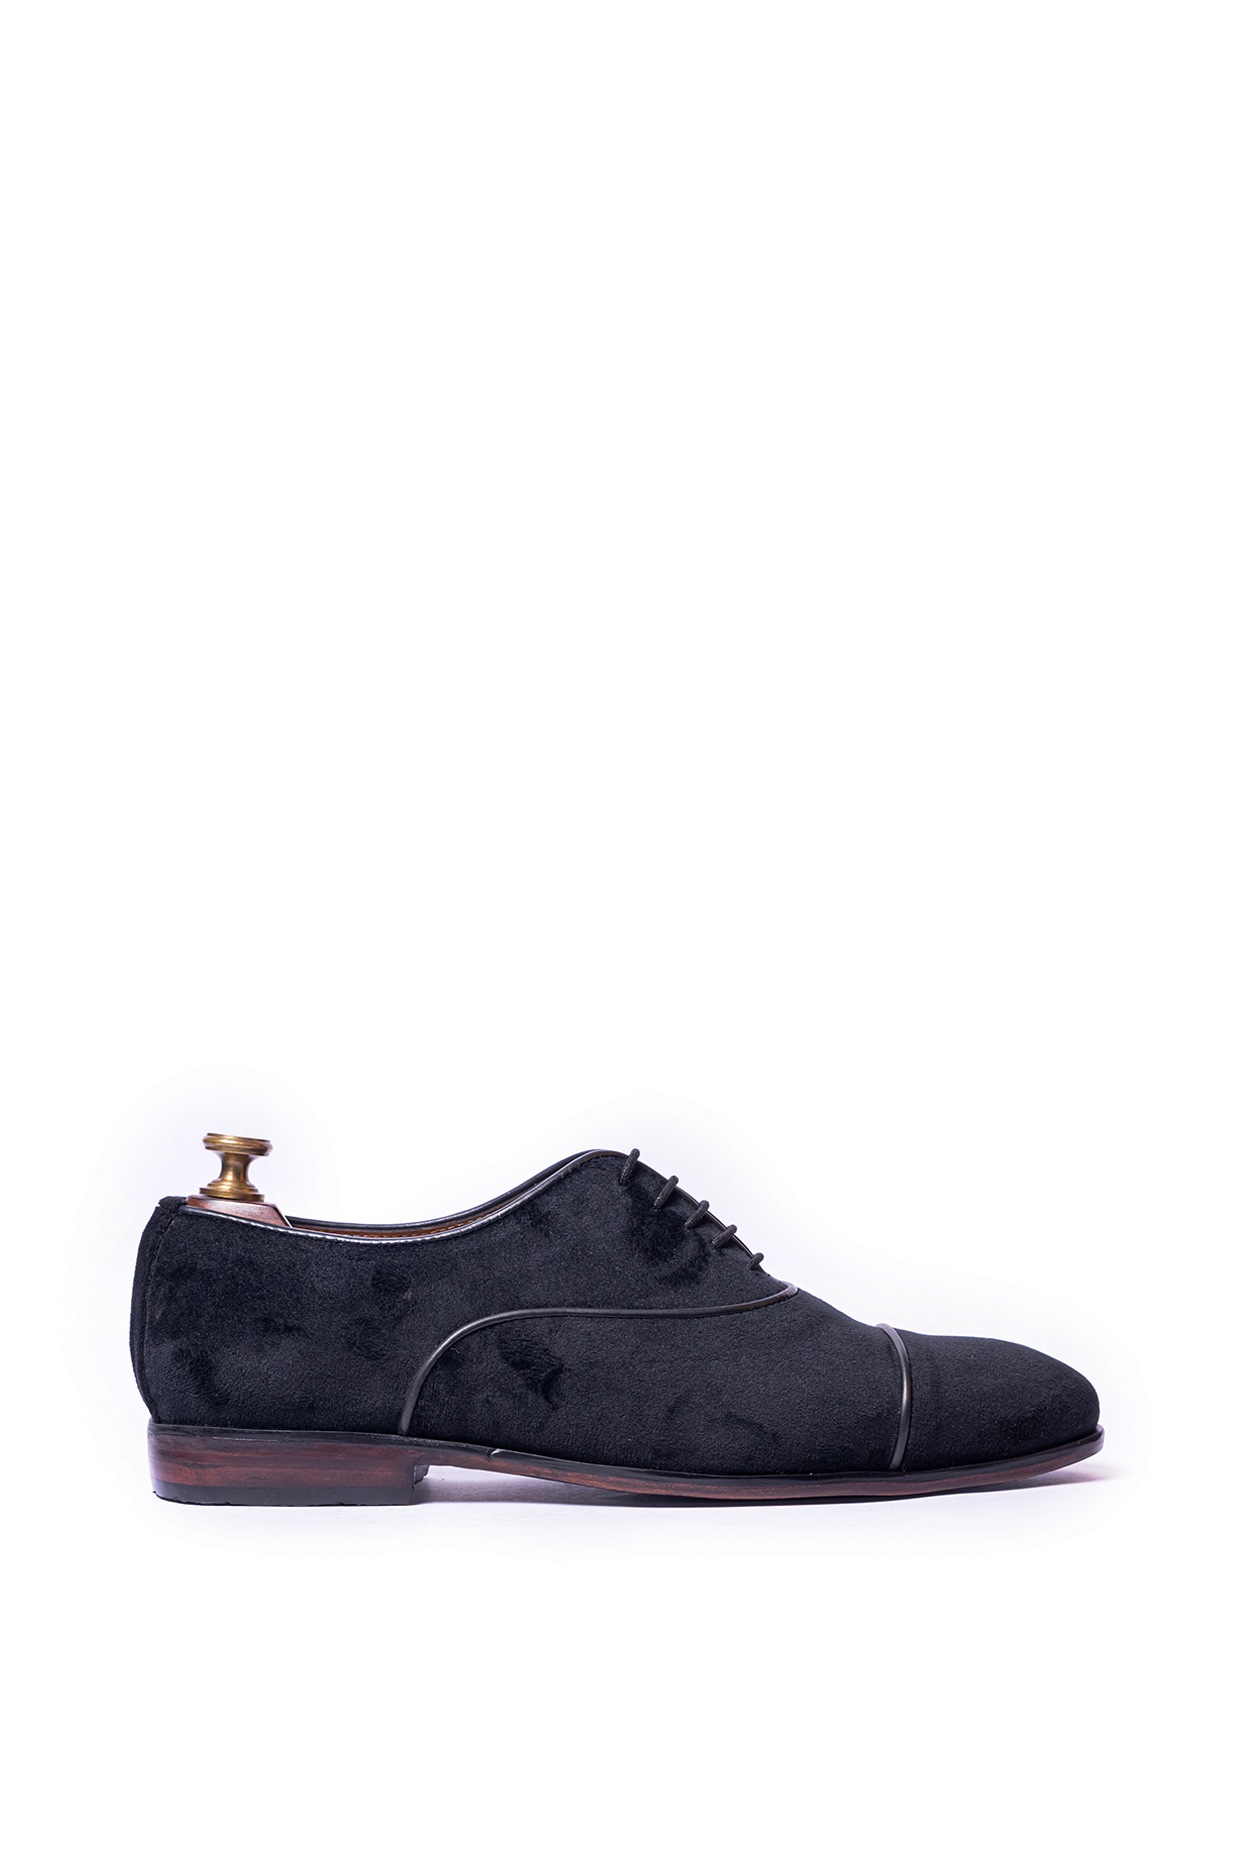 Black Velvet Designer Shoes – Chola by Sanjay & Shammy